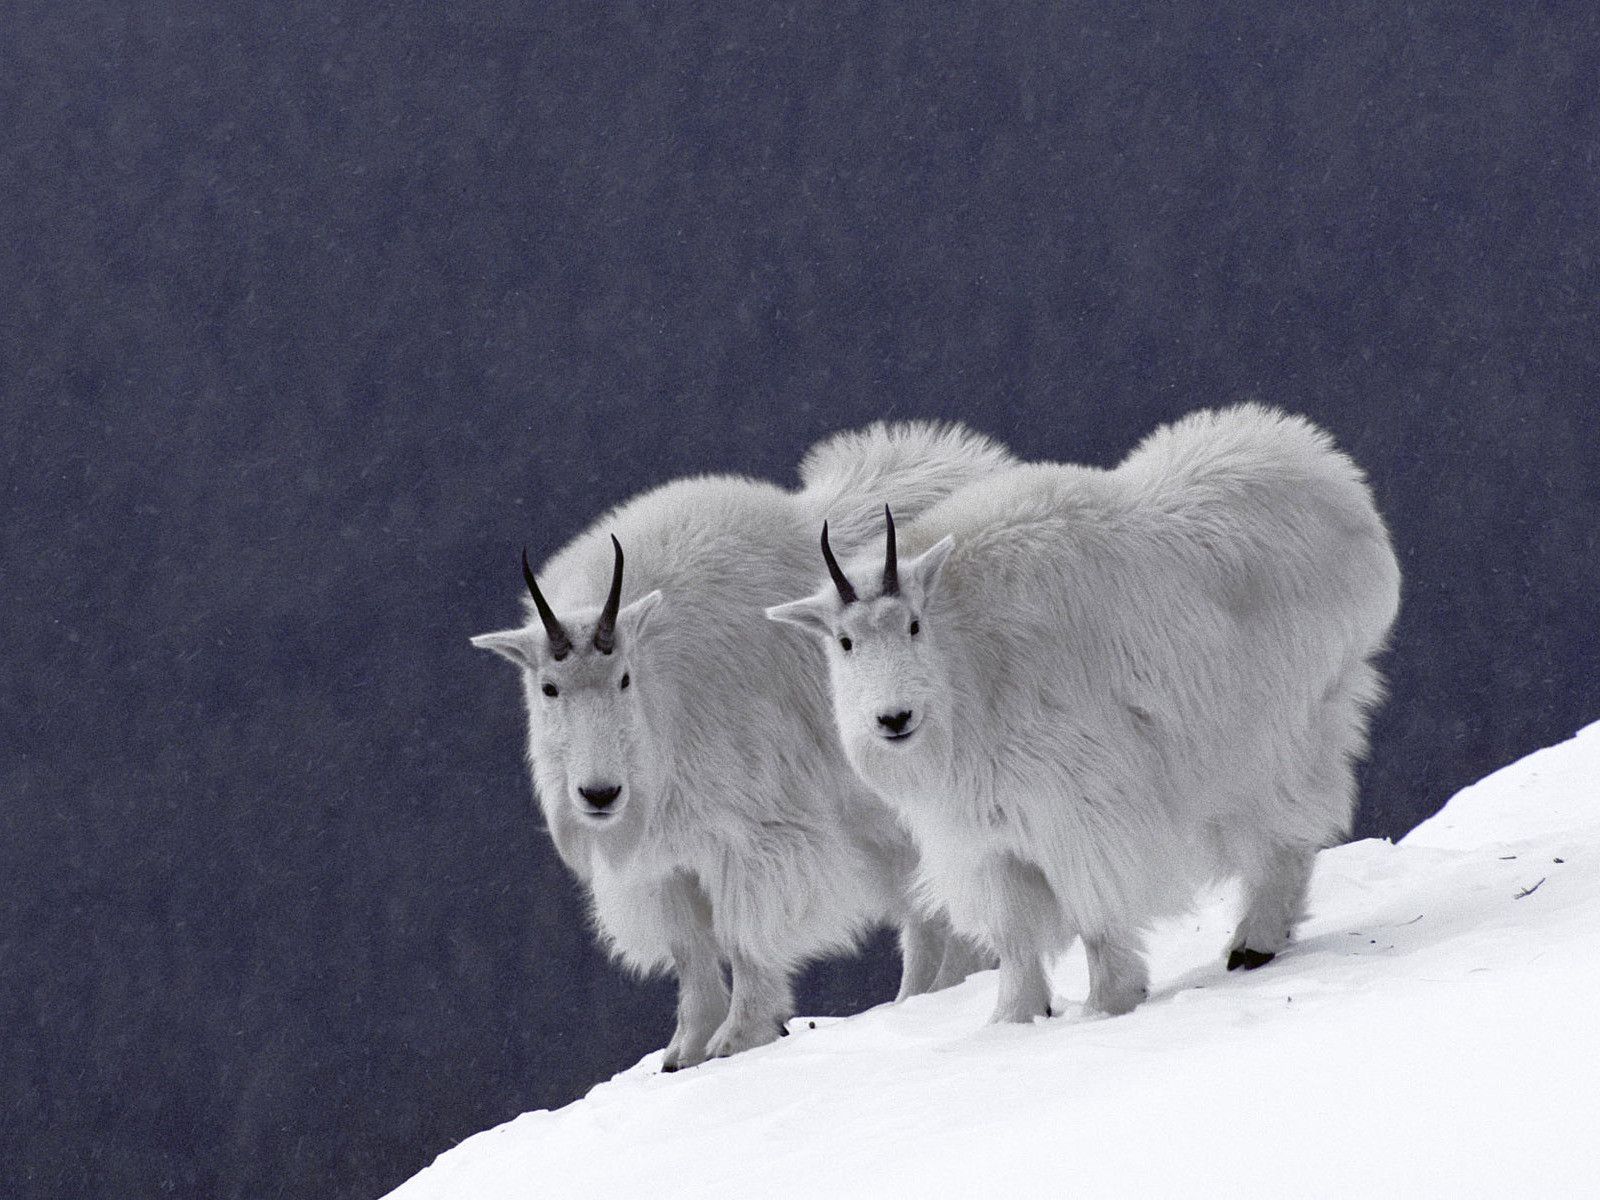 А это новогодний вариант горных козлов. Они называются снежными козами и выделены в отдельный вид горных козлов